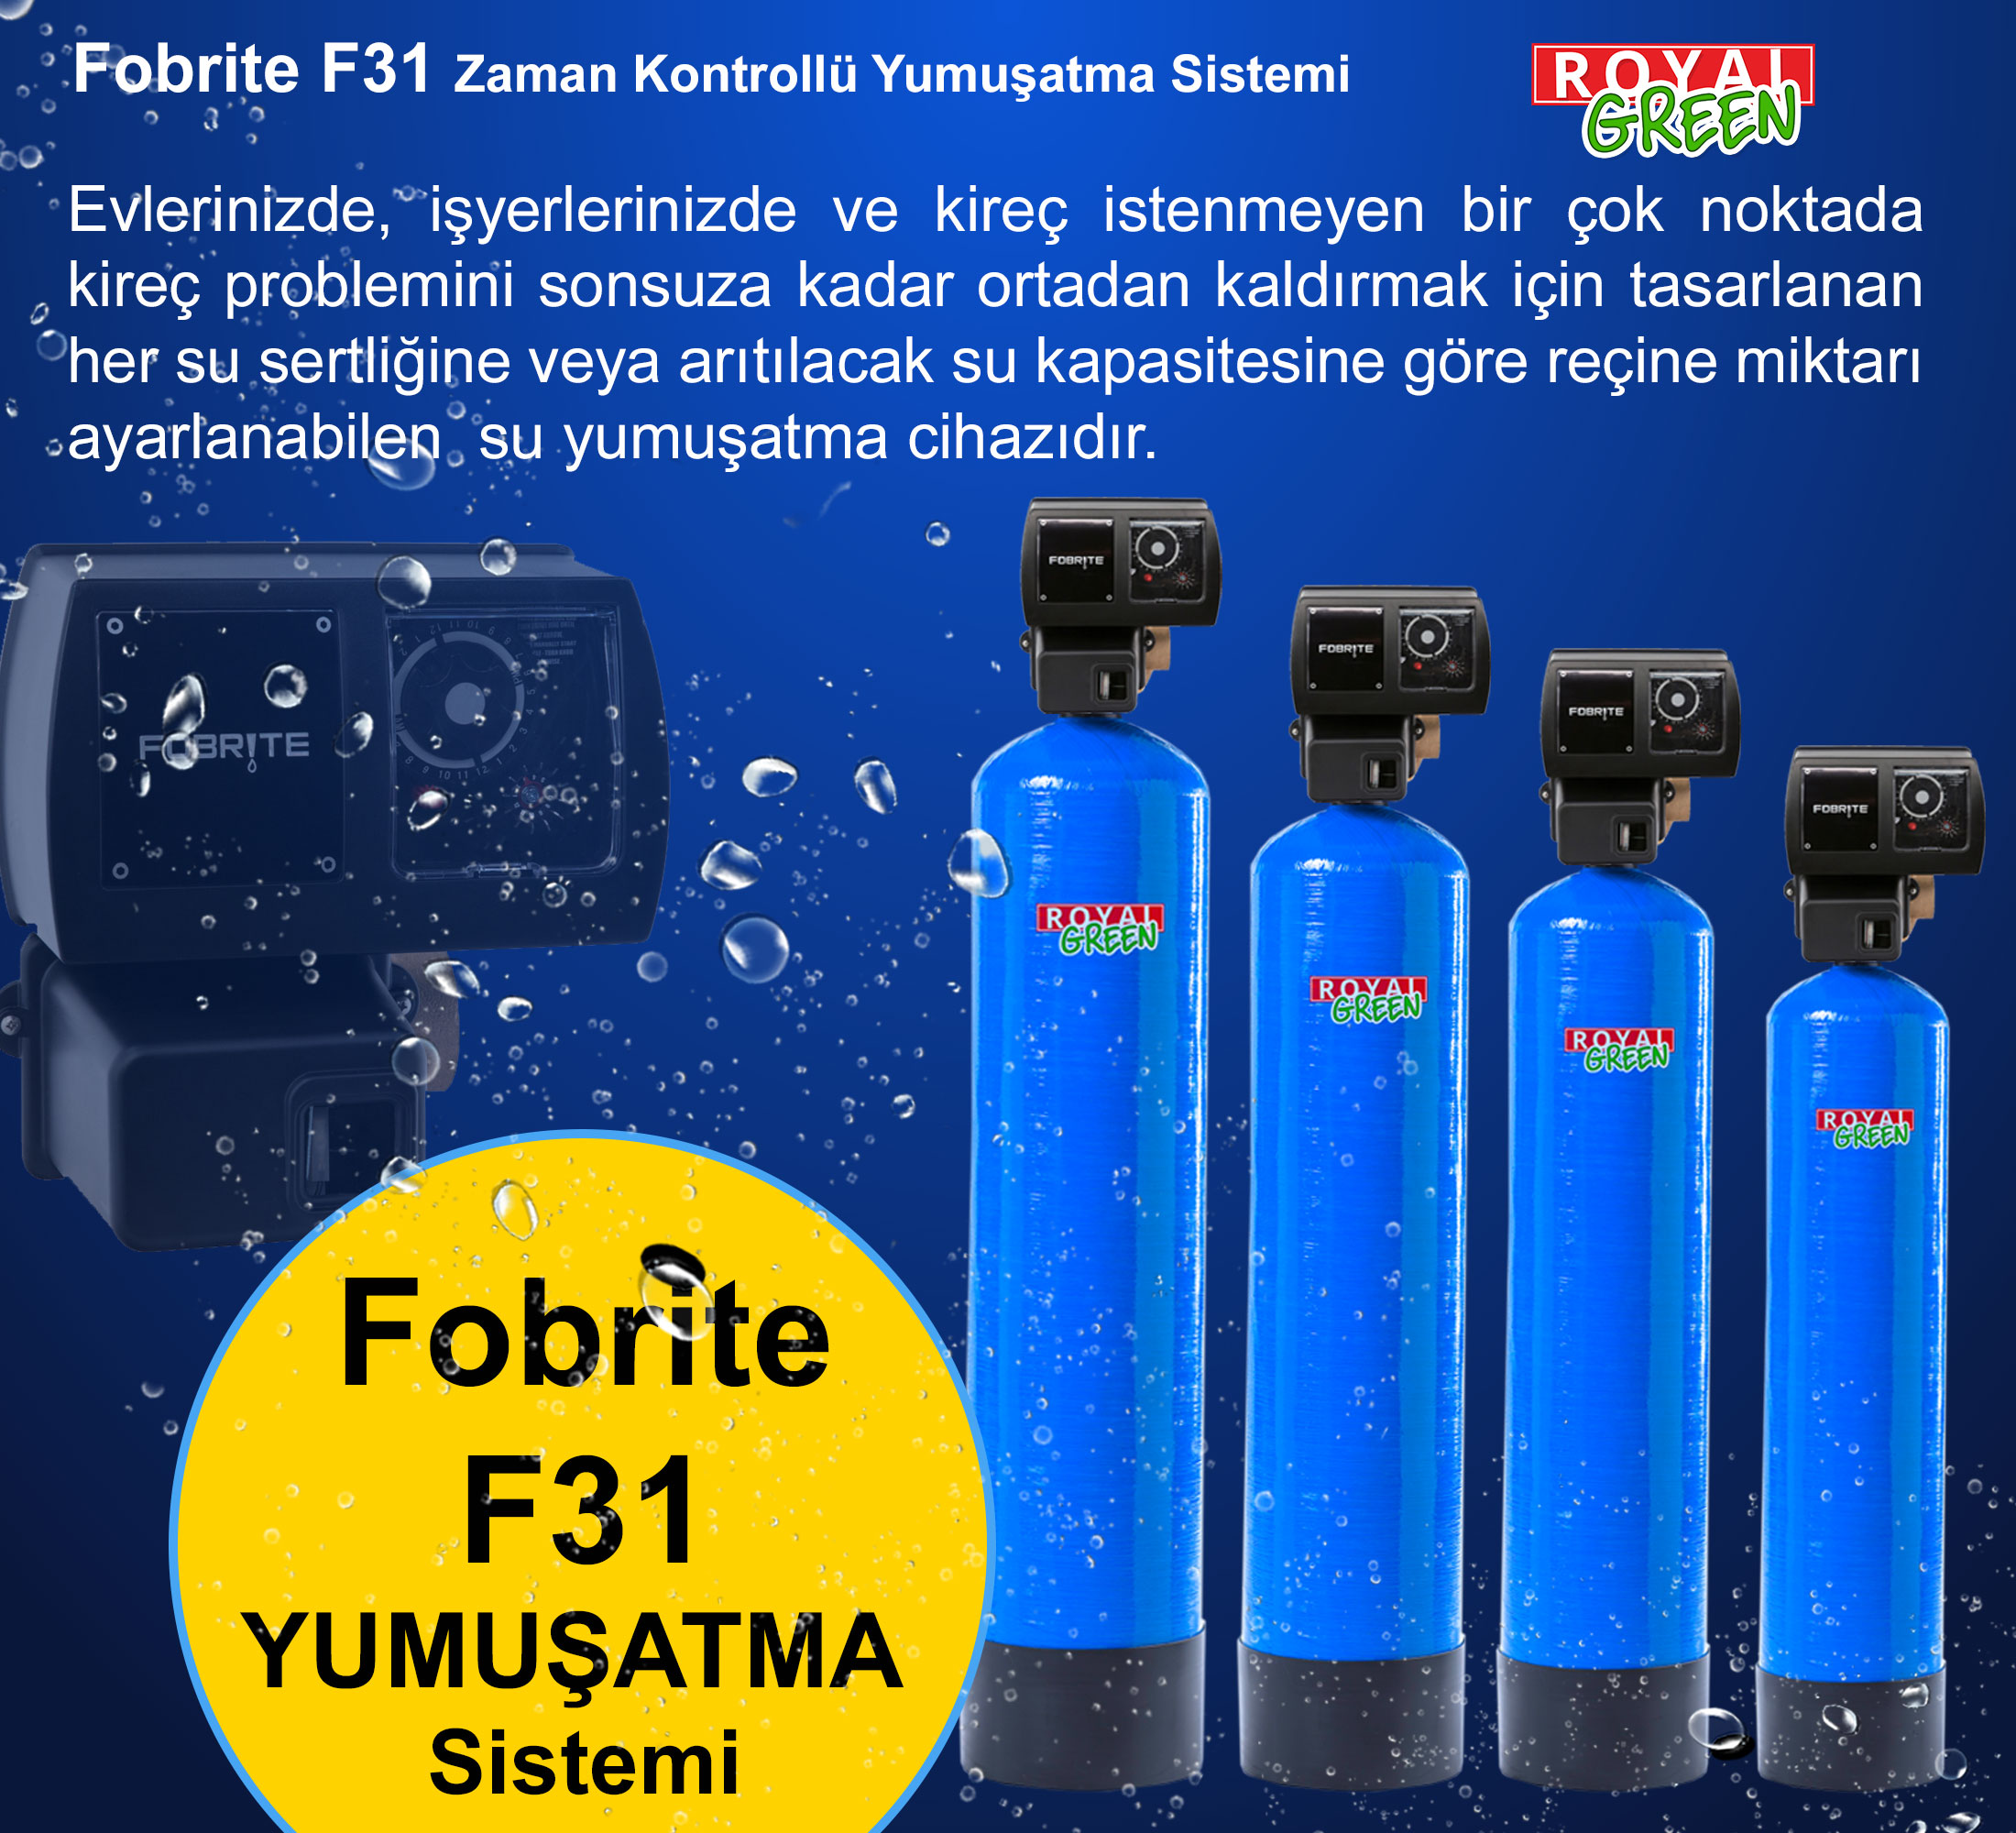 fobrite F31 yumusatma sistemi banner